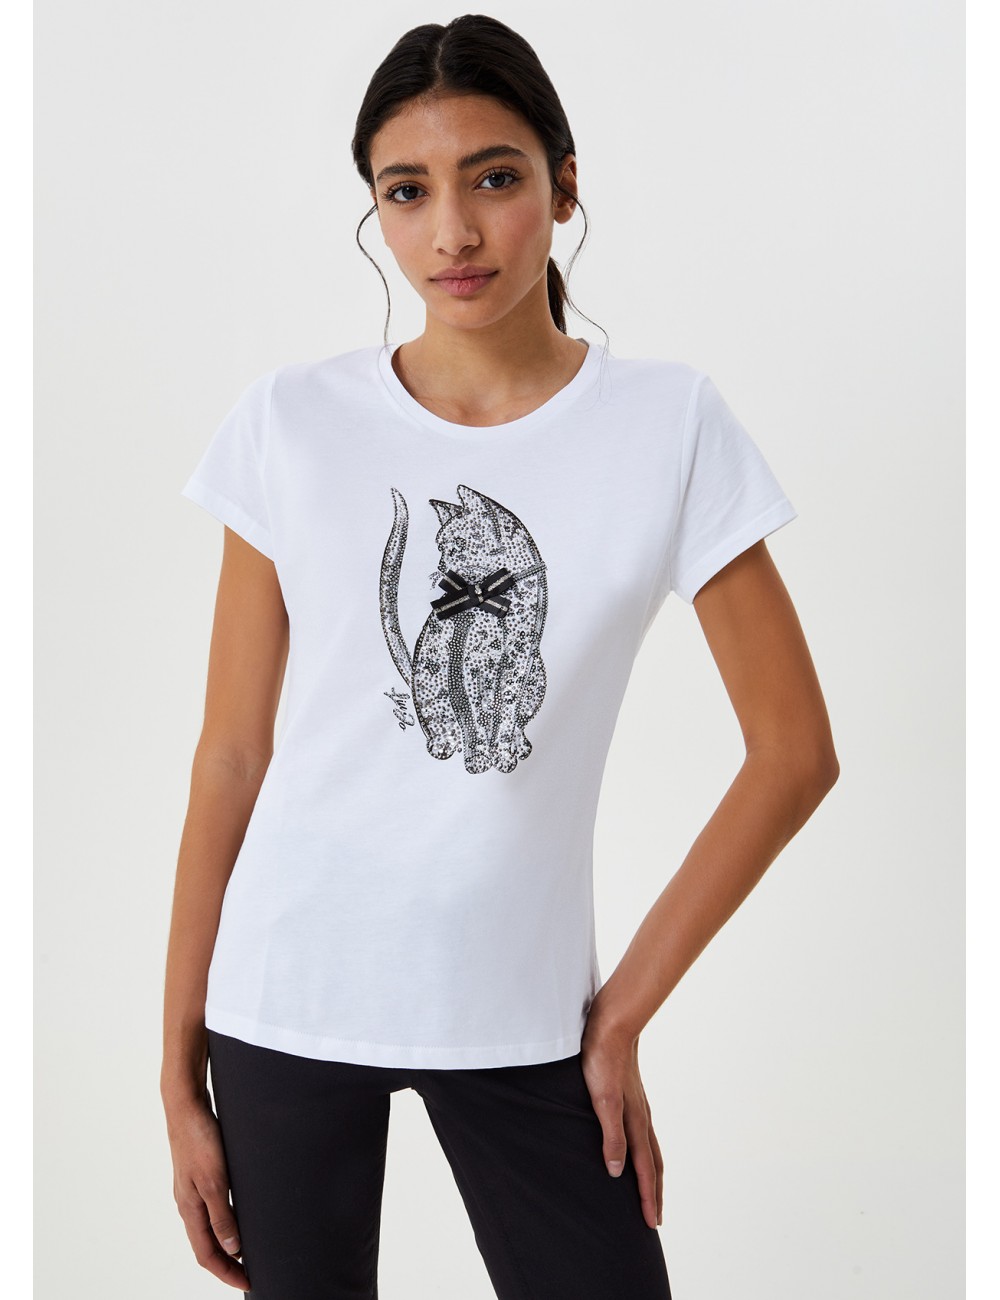 WF0486 T SHIRT DONNA LIU JO T-shirt con stampa glitter WOMAN gatto maglia